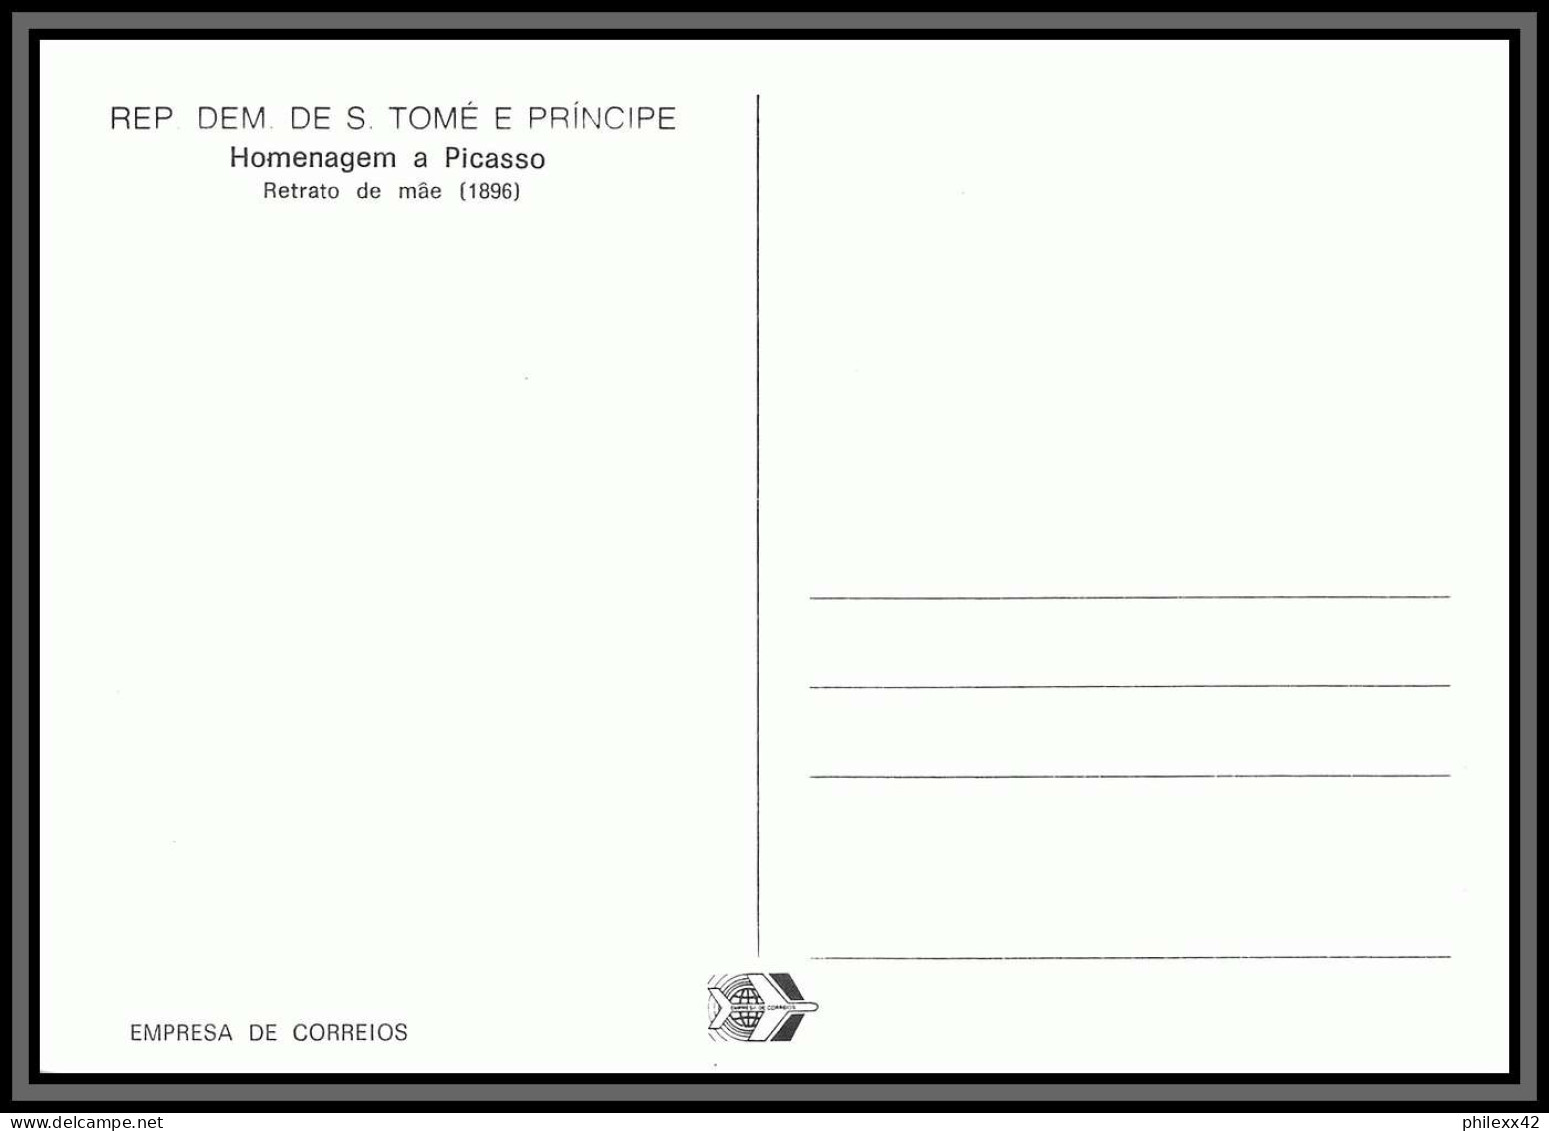 5847 Carte Maximum (card) S Tome E Principe Mi N°801/806 Picasso Tableau (Painting) 1982 Fdc Premier Jour - Picasso